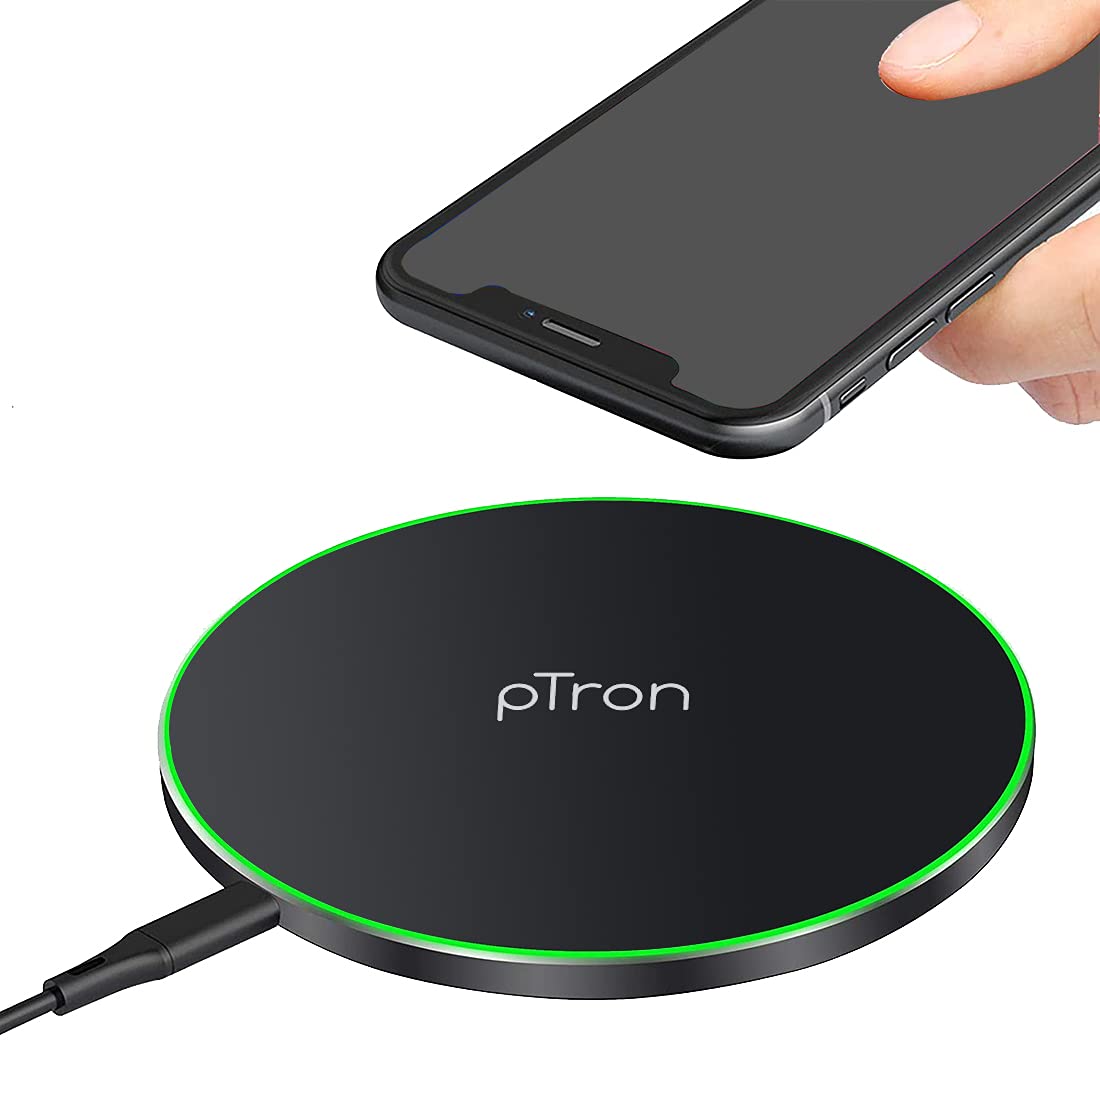 Amazon Deal: pTron का वायरलेस फोन चार्जर खरीदें 800 रुपये से कम में, ये हैं आज की बेस्ट सेलिंग मोबाइल Accessories डील